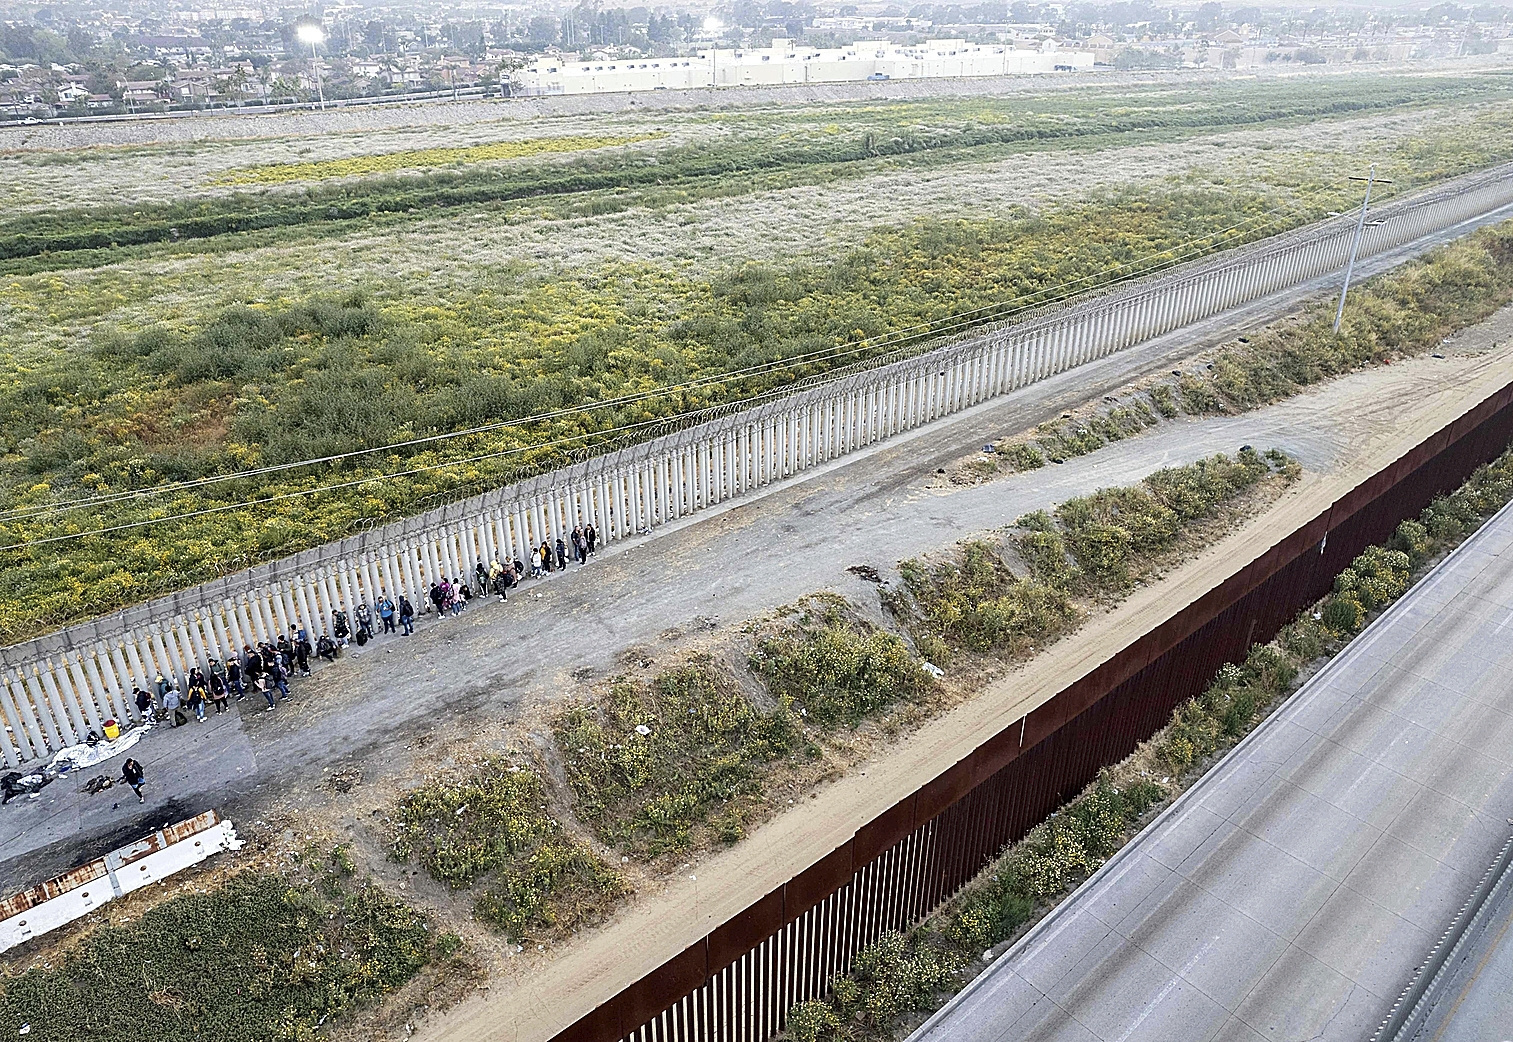 Vista area desde Tijuana (Mxico) de la fila de migrantes que esperan en la frontera a ser identificados por las autoridades de EEUU.